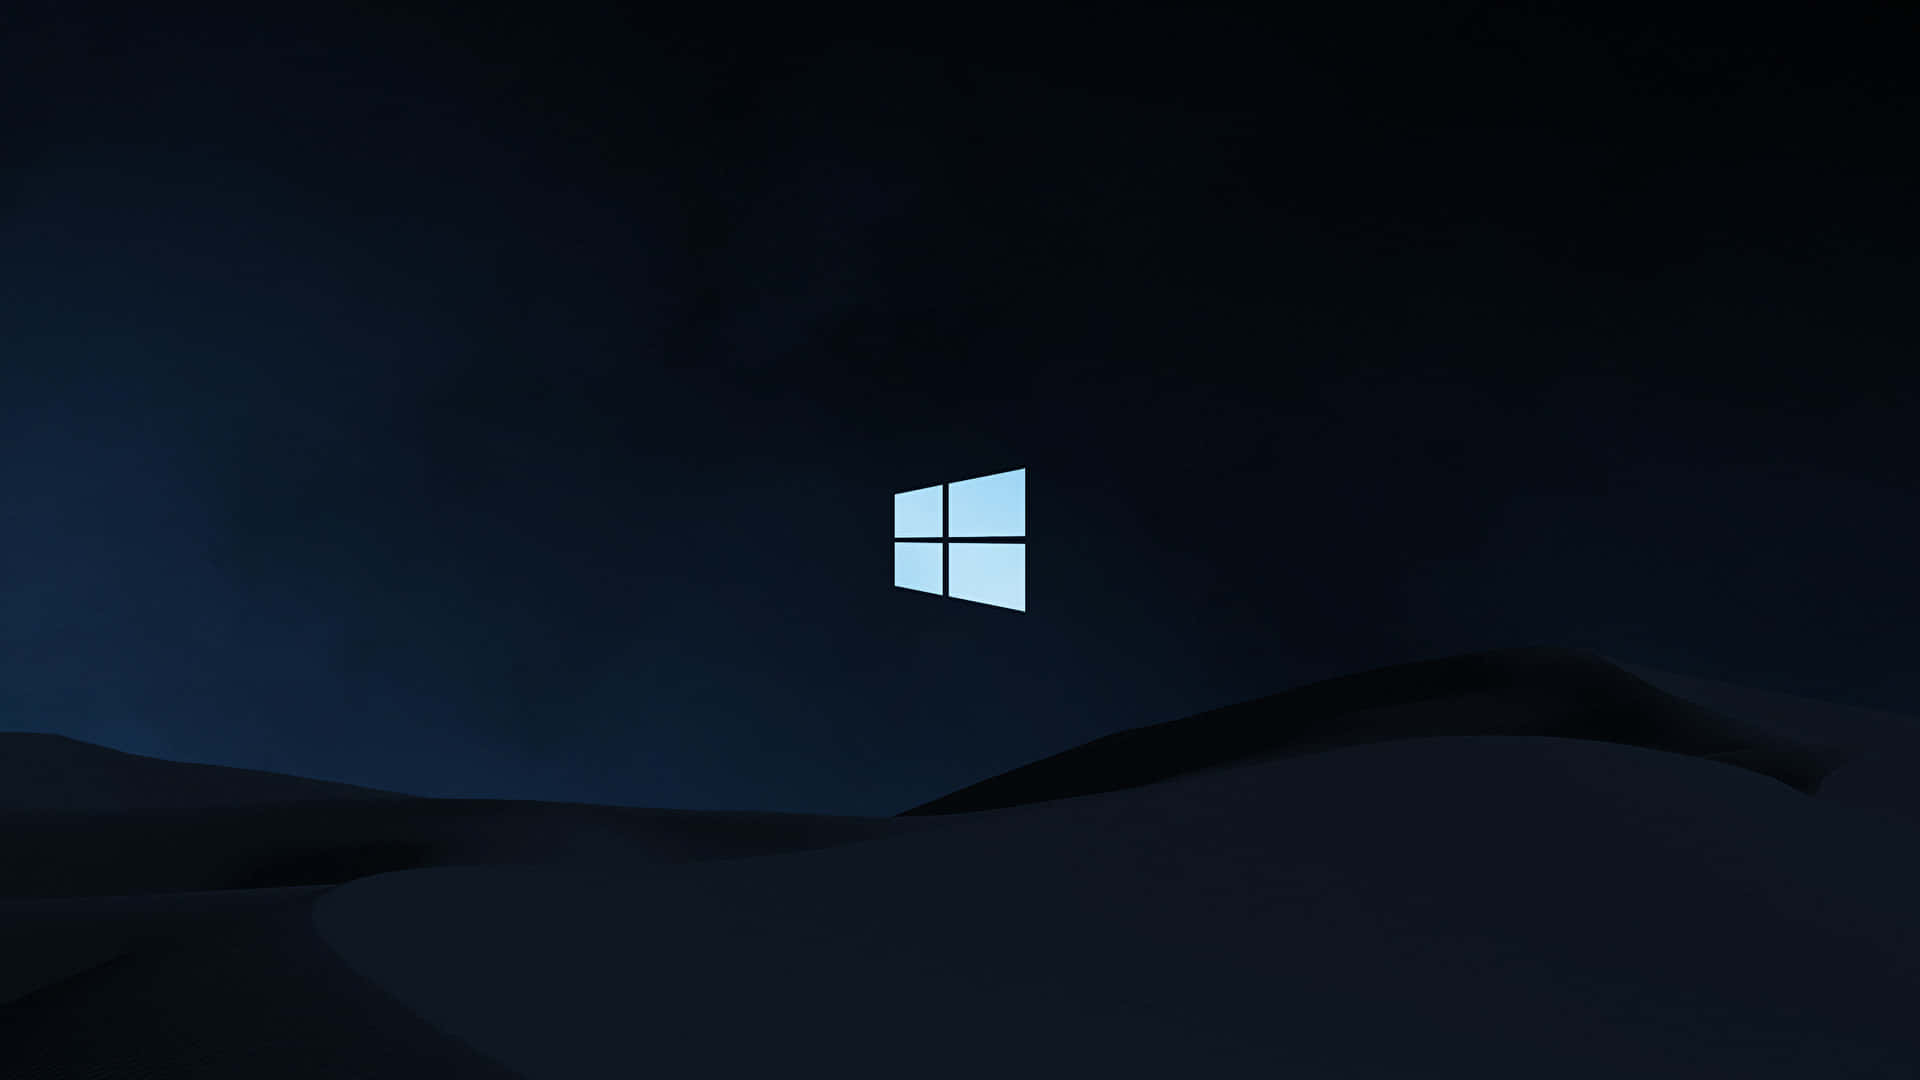 Logode Windows 10 En La Oscuridad